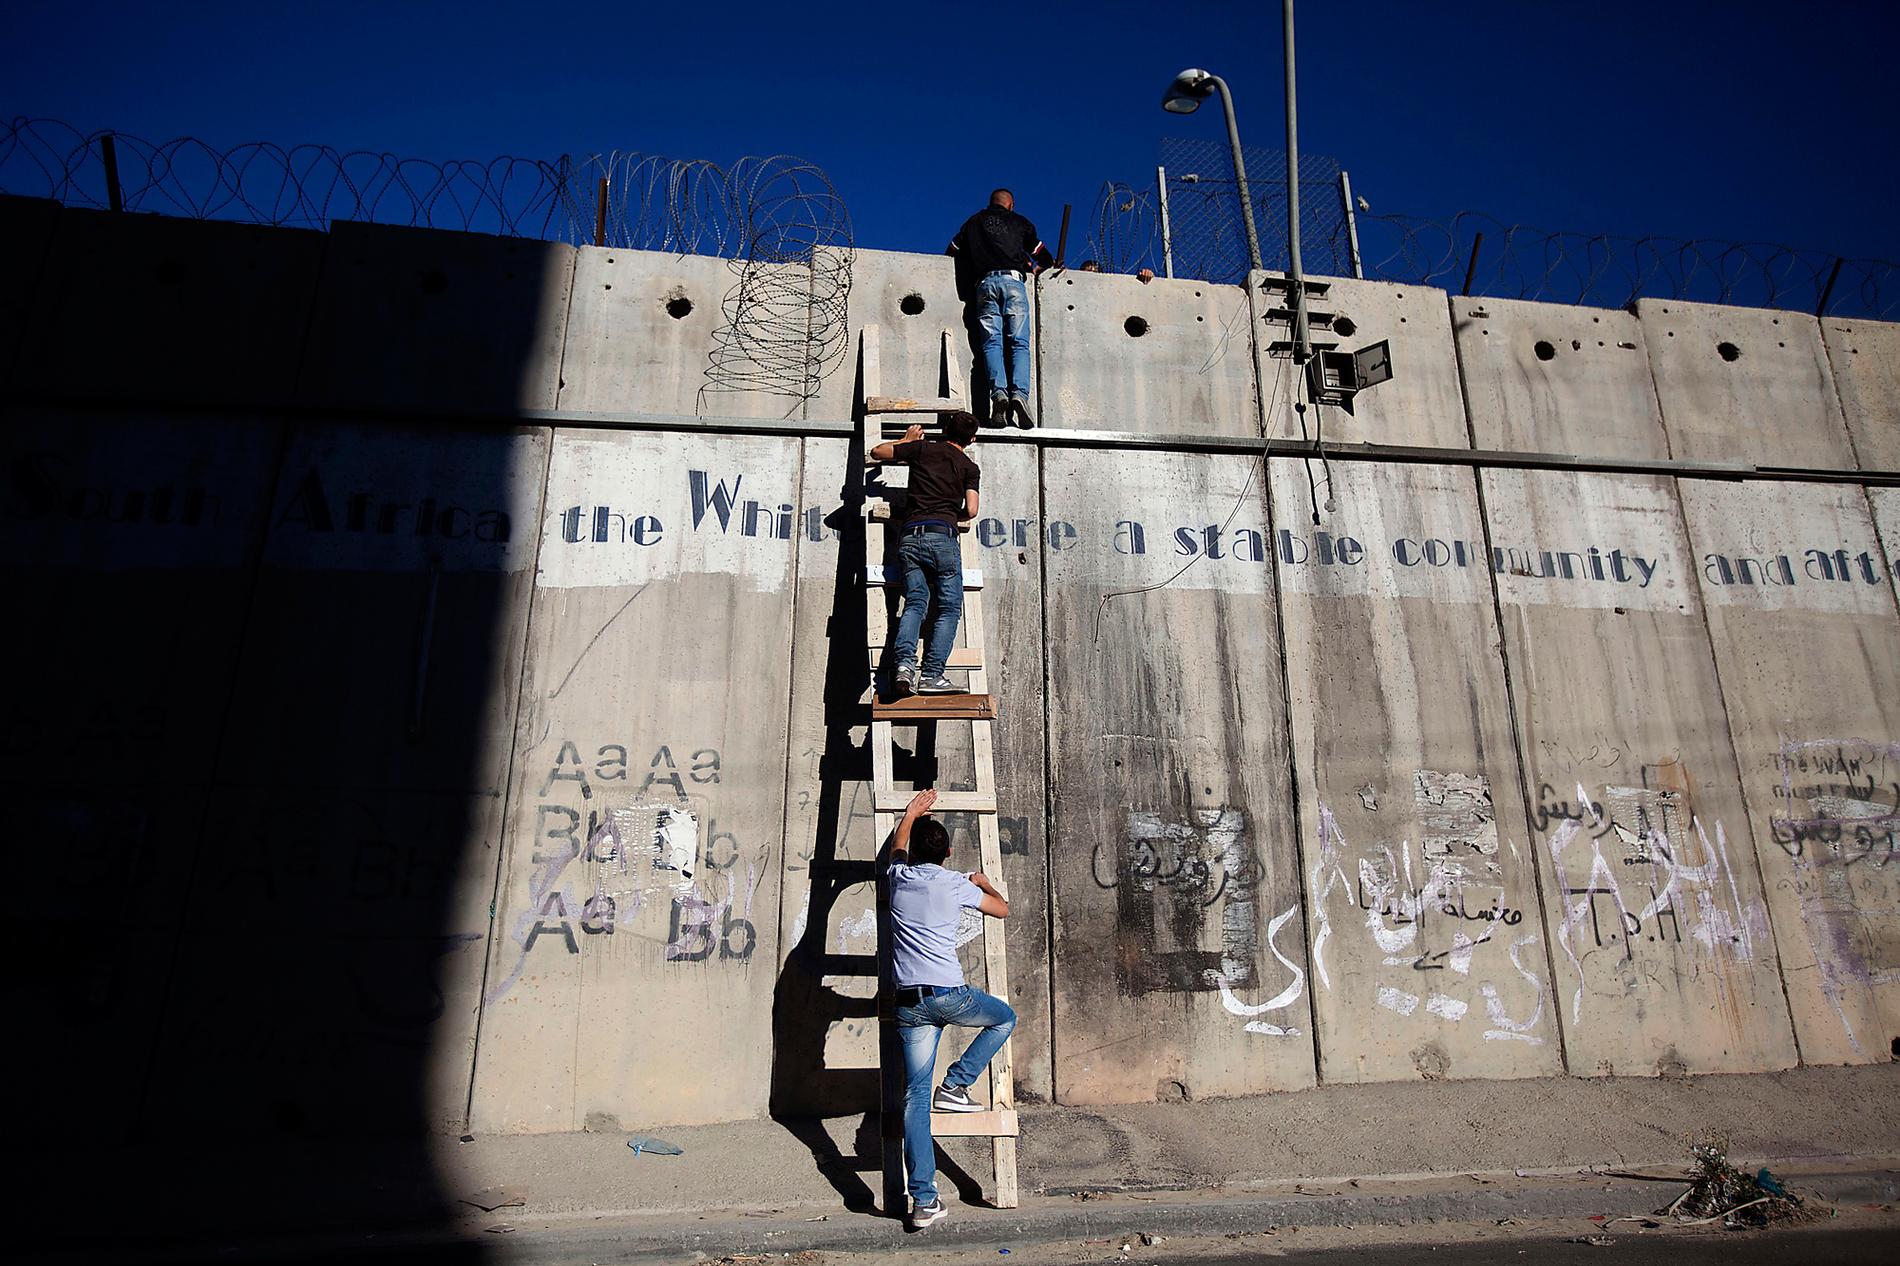 Murar är till för att rivas Idag skär den israeliska muren sönder landet. Palestinierna stängs ute eller tvingas, som här, att klättra för att ta sig till moskén. Men en dag kommer den, som alla murar, att rivas. Foto: Majdi Mohammed/AP.